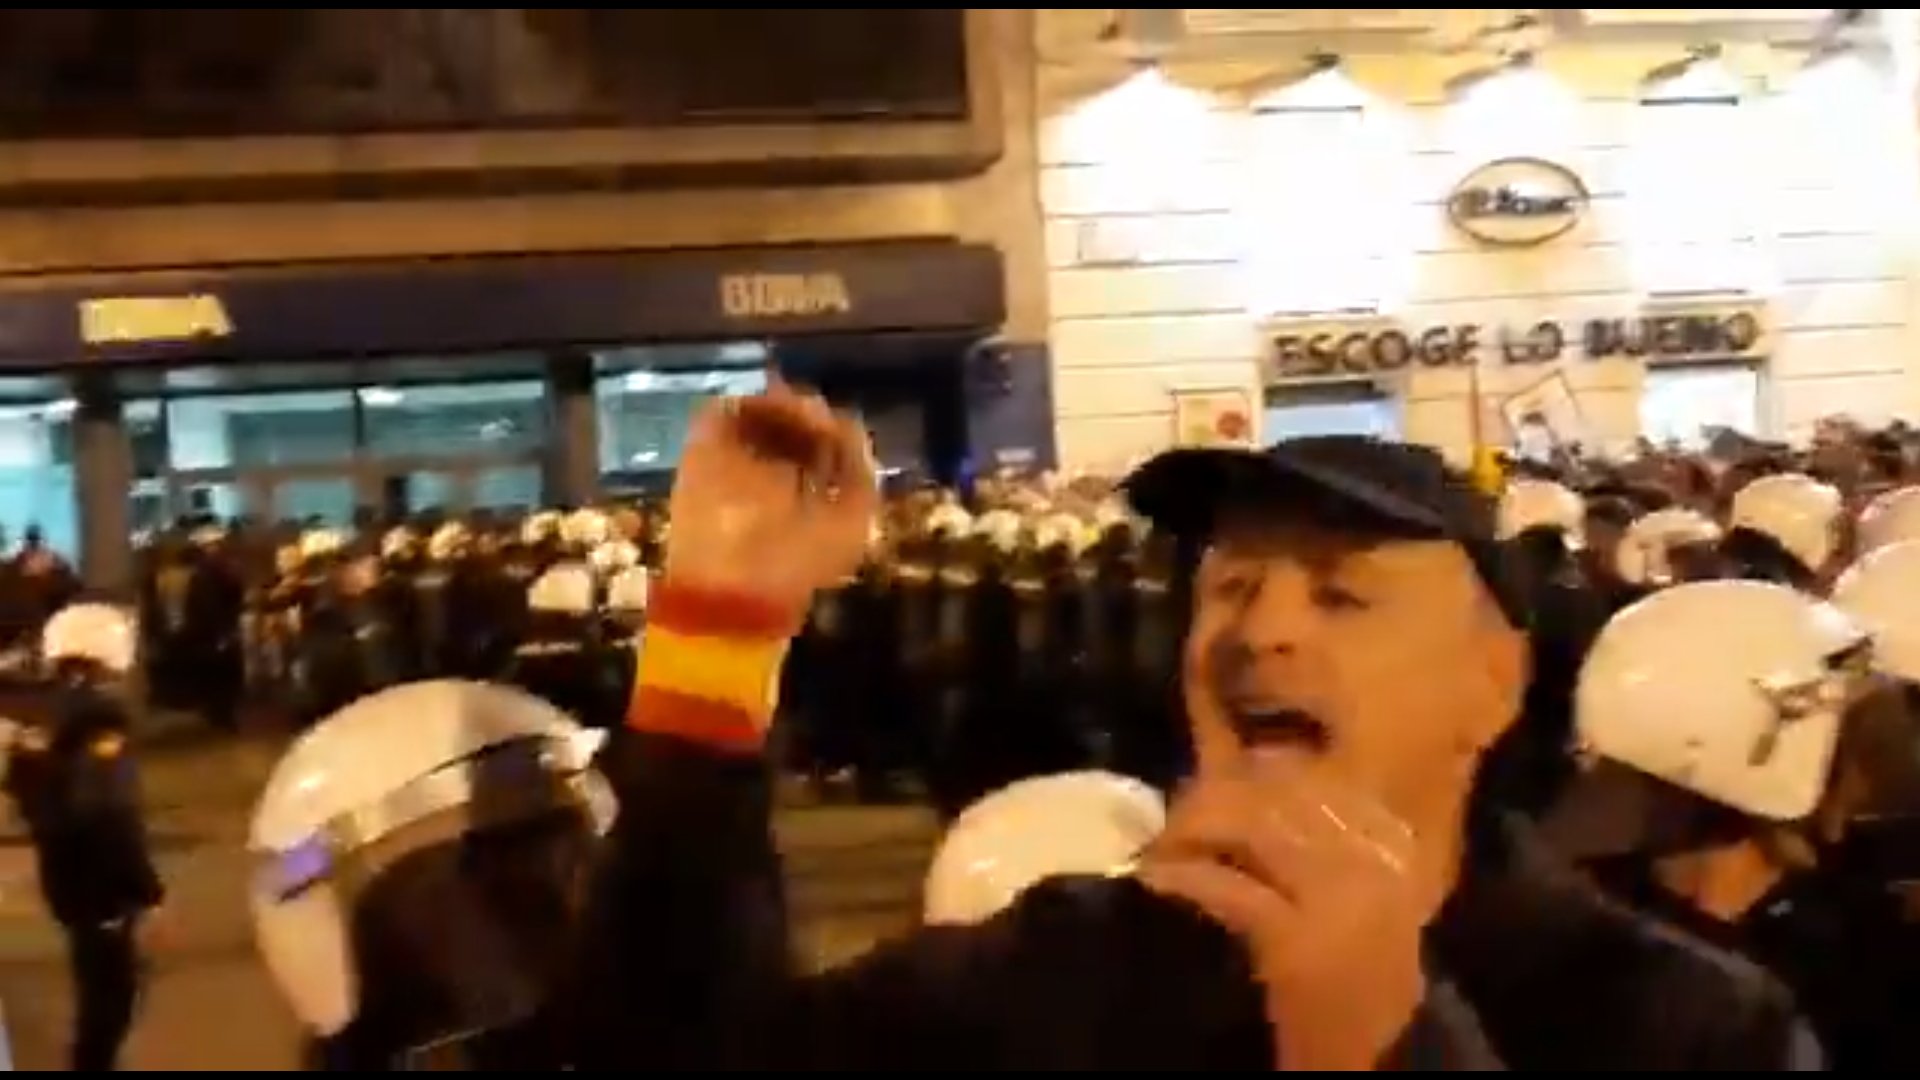 Ultres amenacen de linxar manifestants procatalans a Saragossa: "los mataríamos"